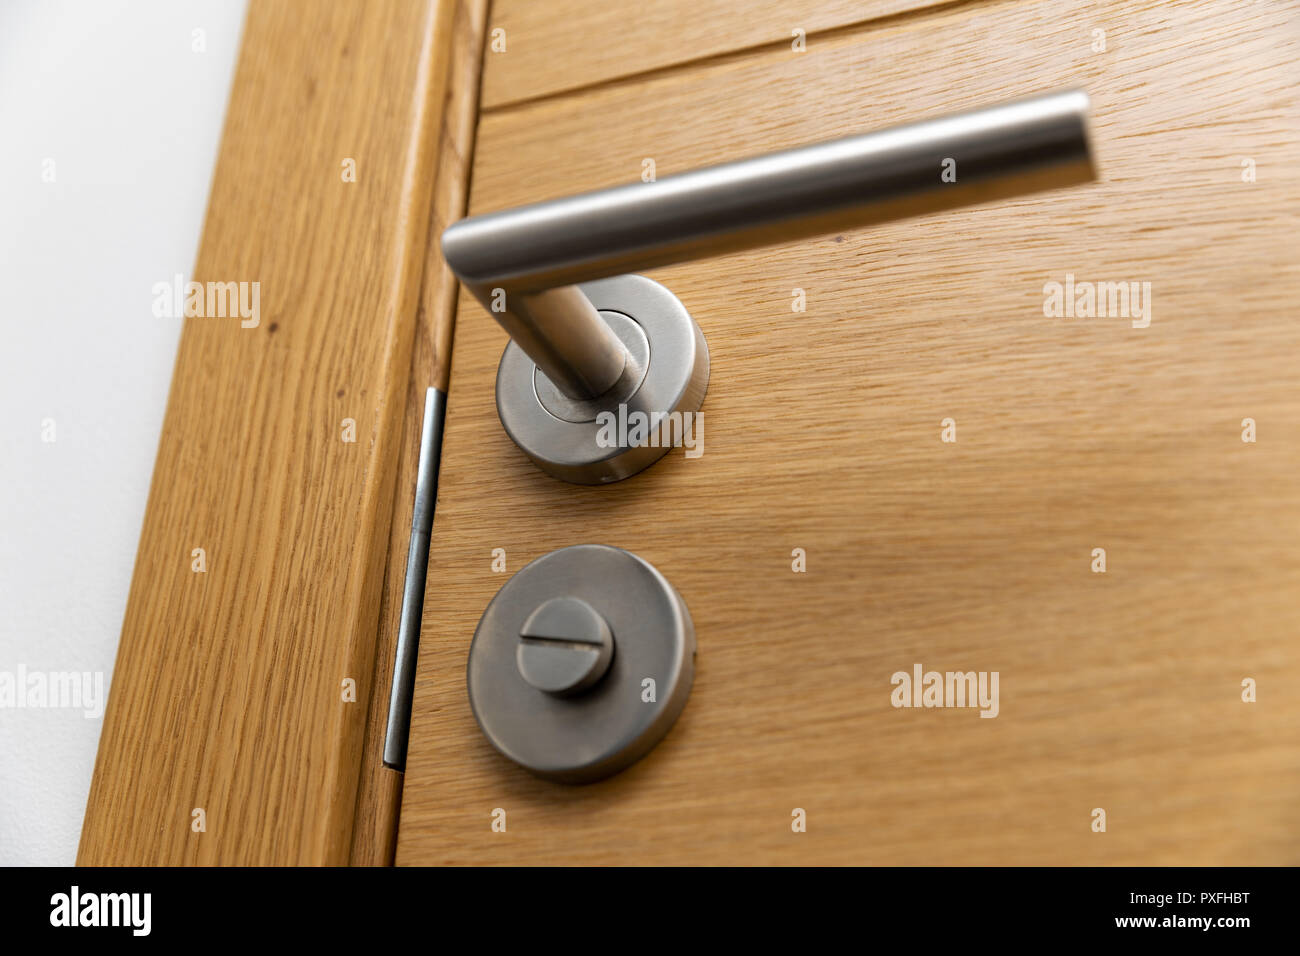 door handle closeup Stock Photo